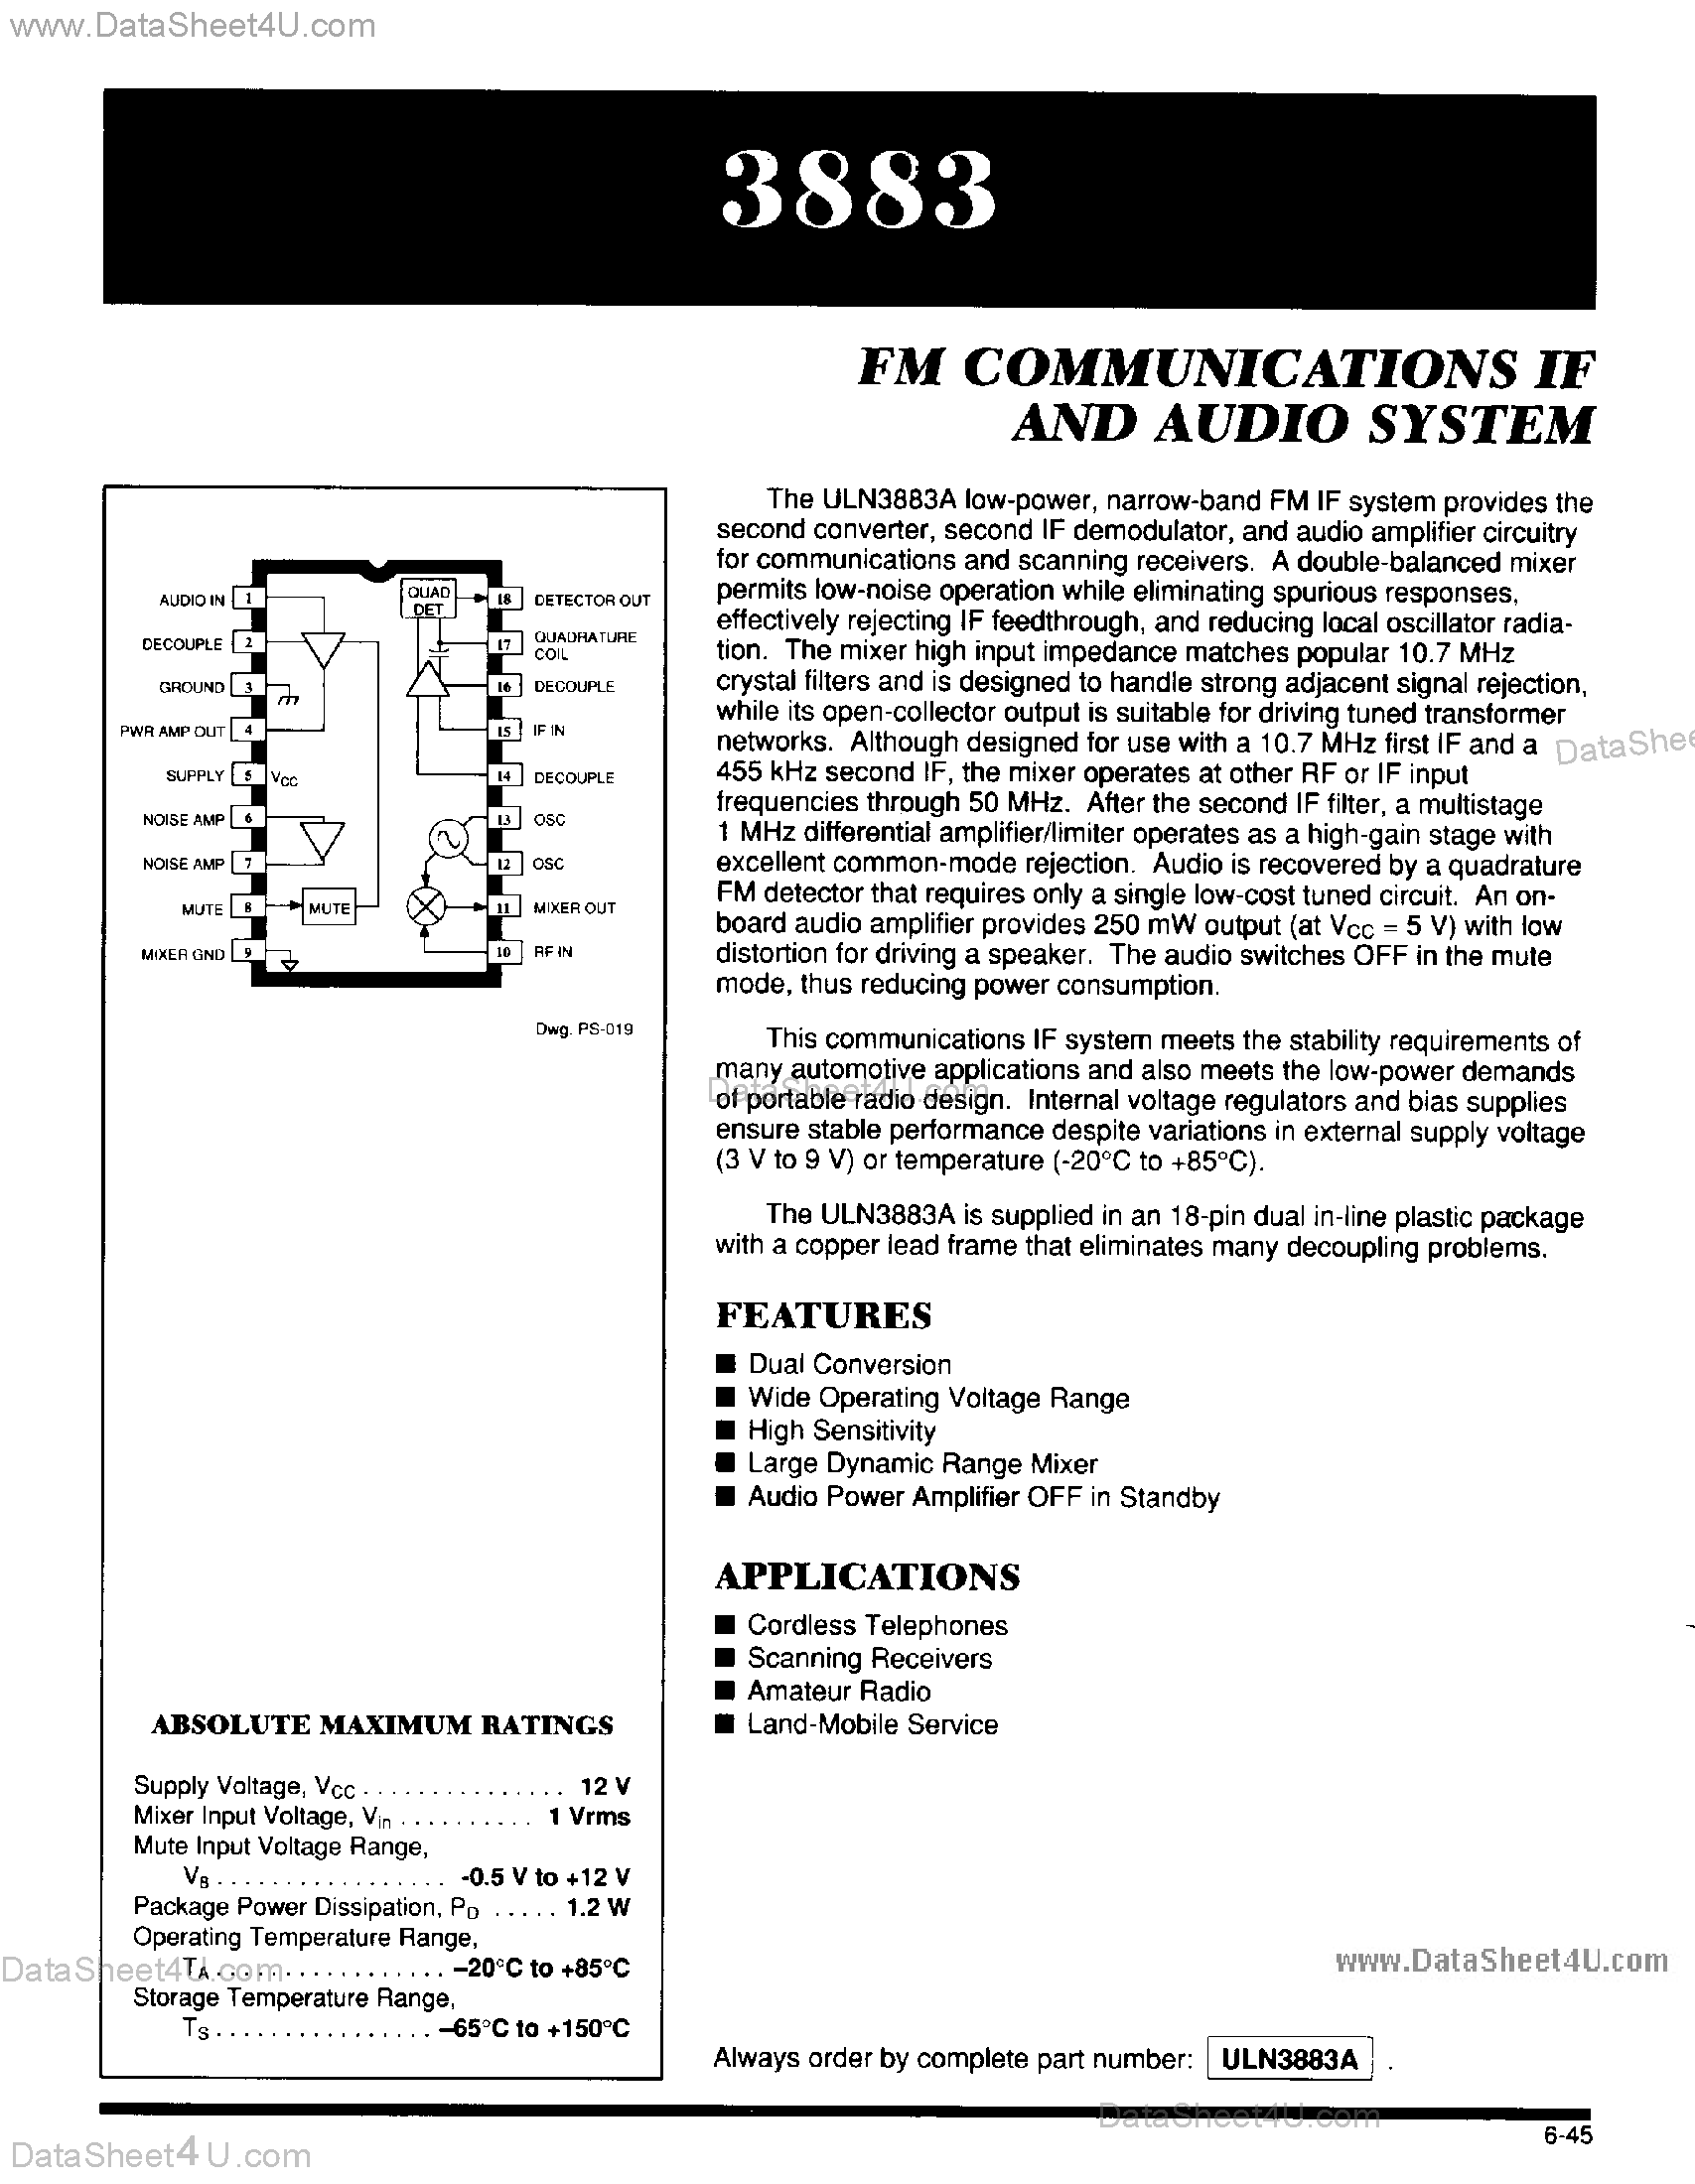 Даташит ULN3883 - FM Communications IF and Audio System страница 1